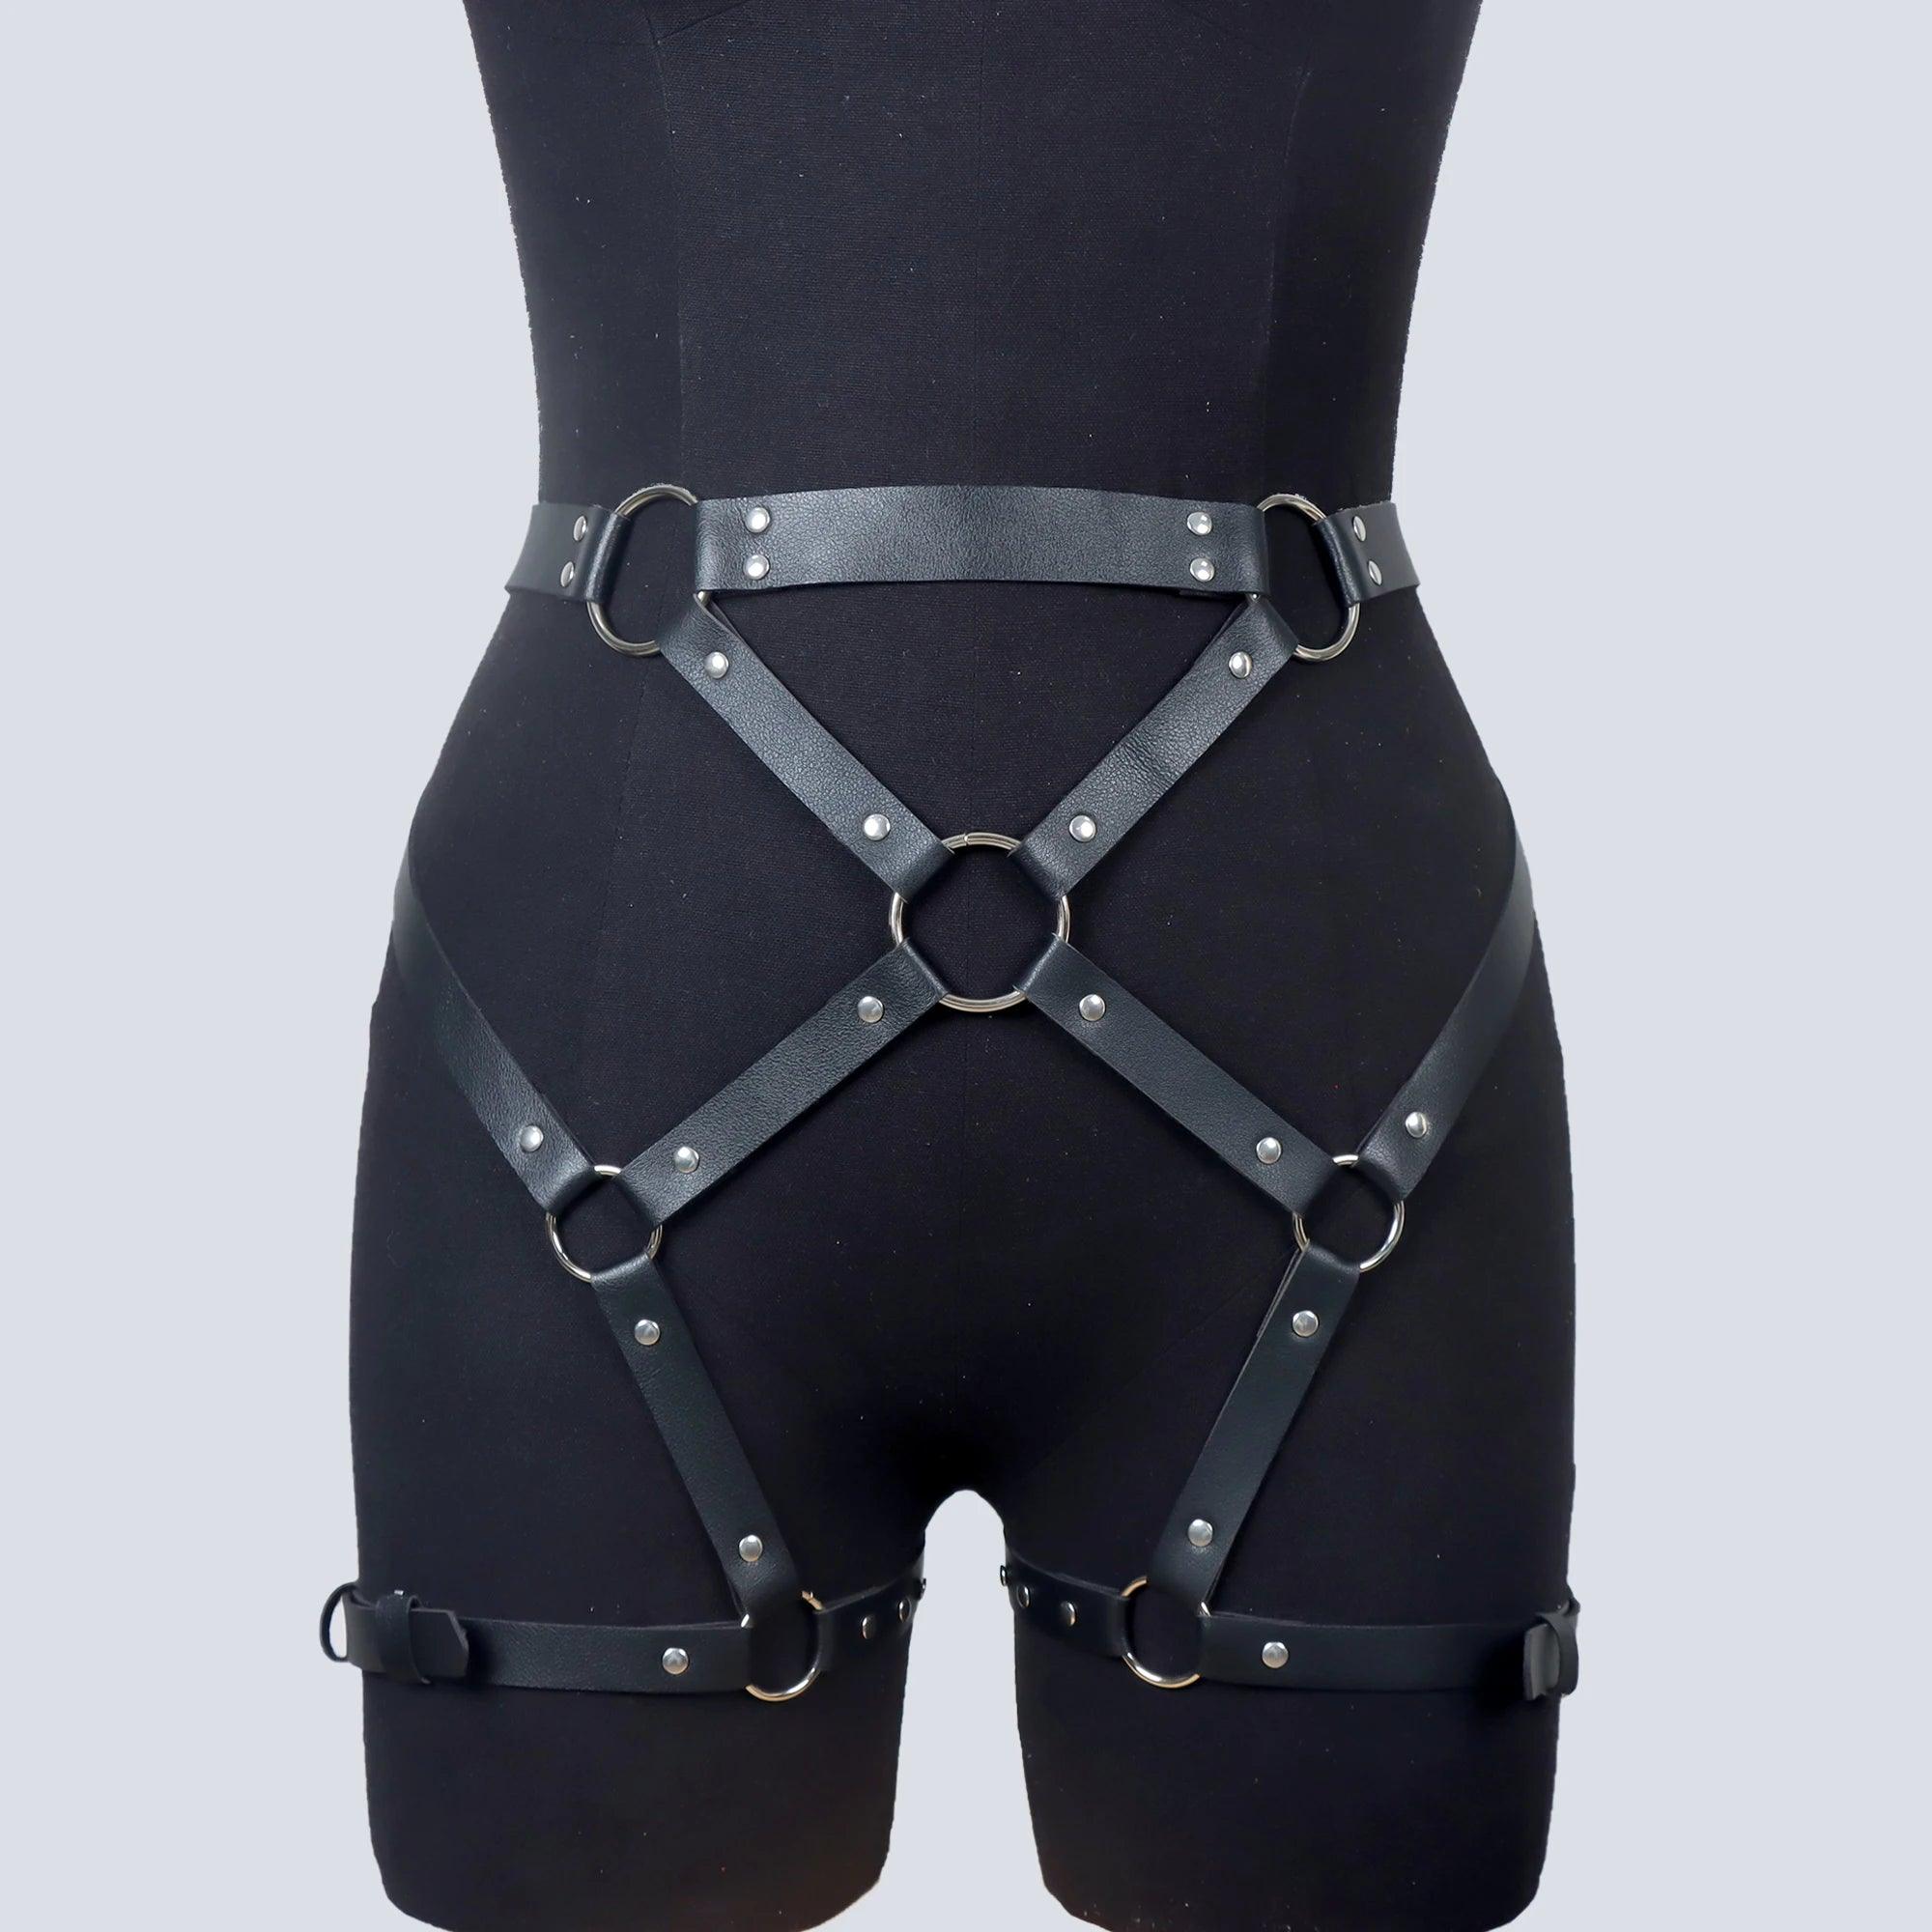 Läder Garter Belt Harnesk: Goth BDSM-Underkläder - WIQ